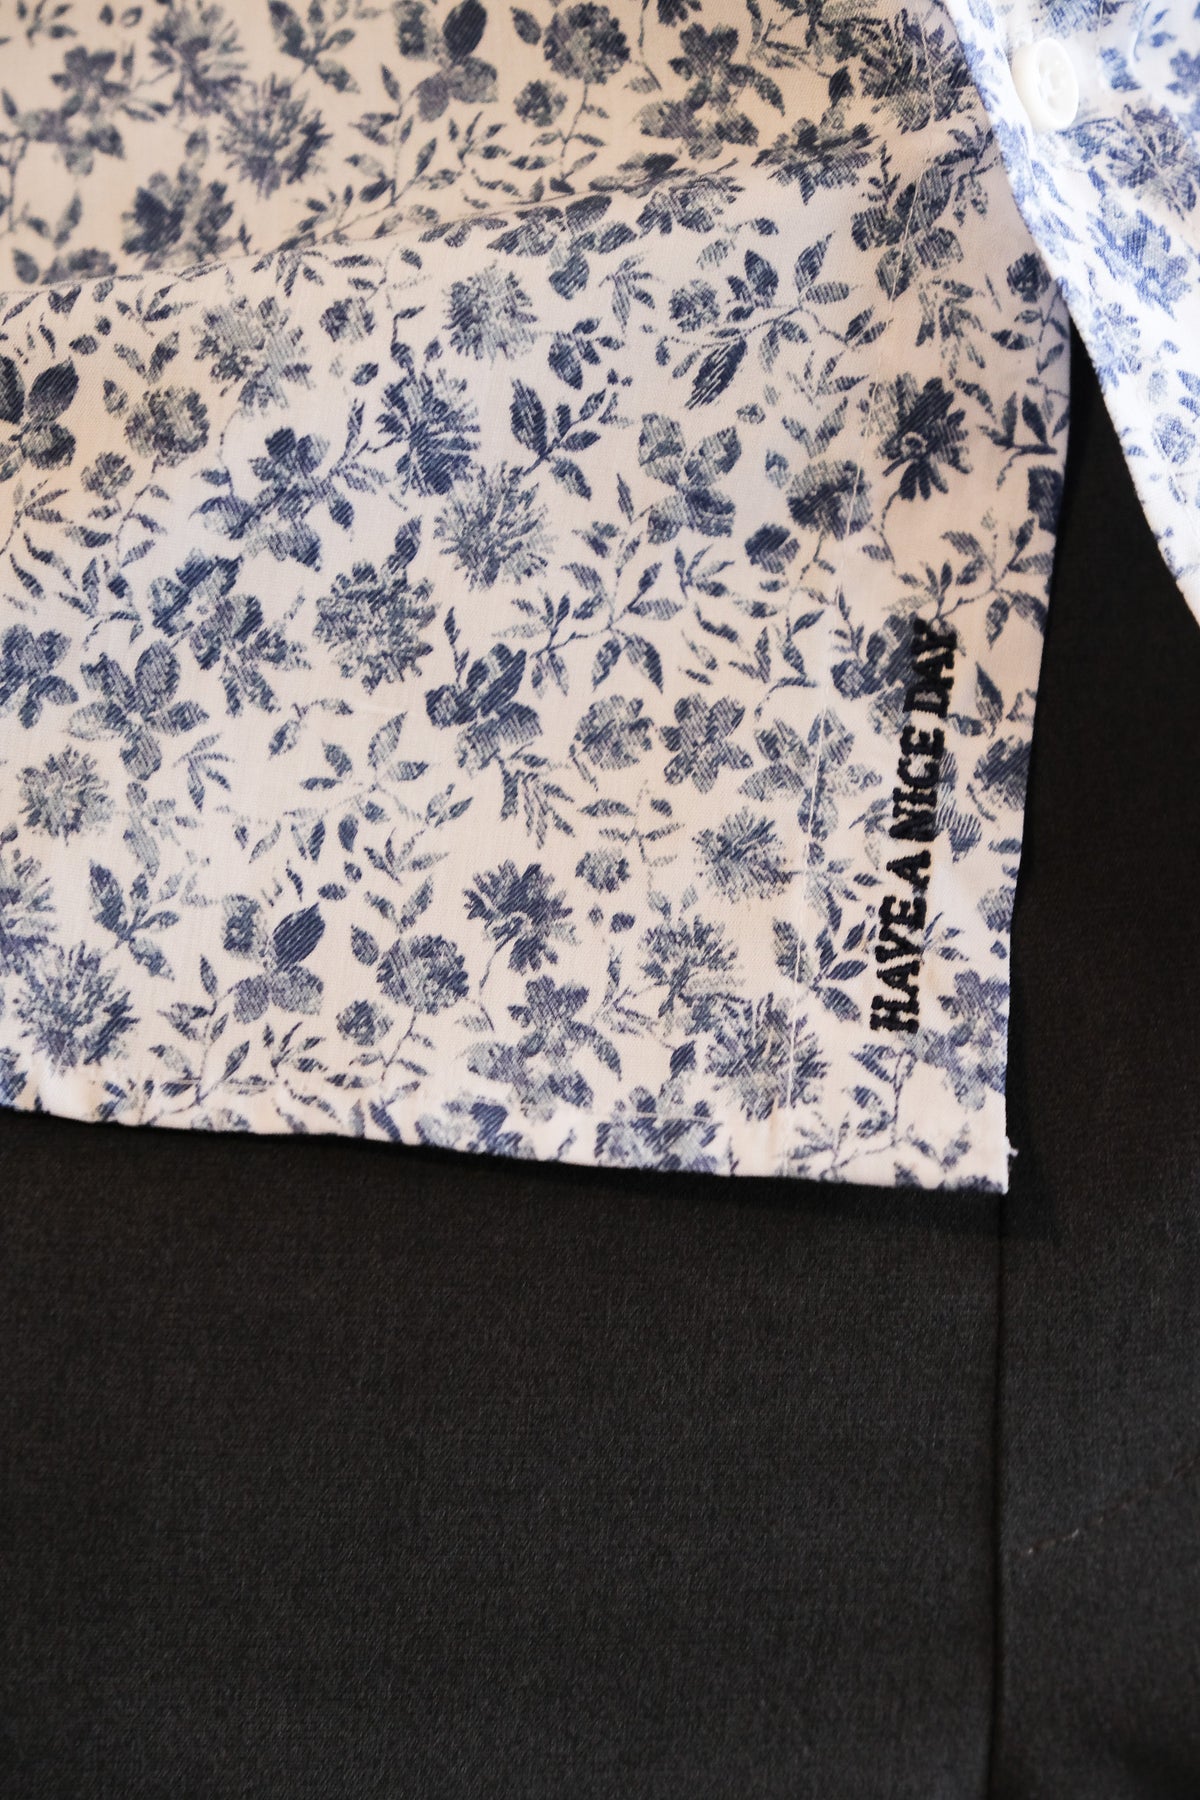 Chemise de loisir imprimée avec motif floral en blanc/bleu (art. 2104-C)